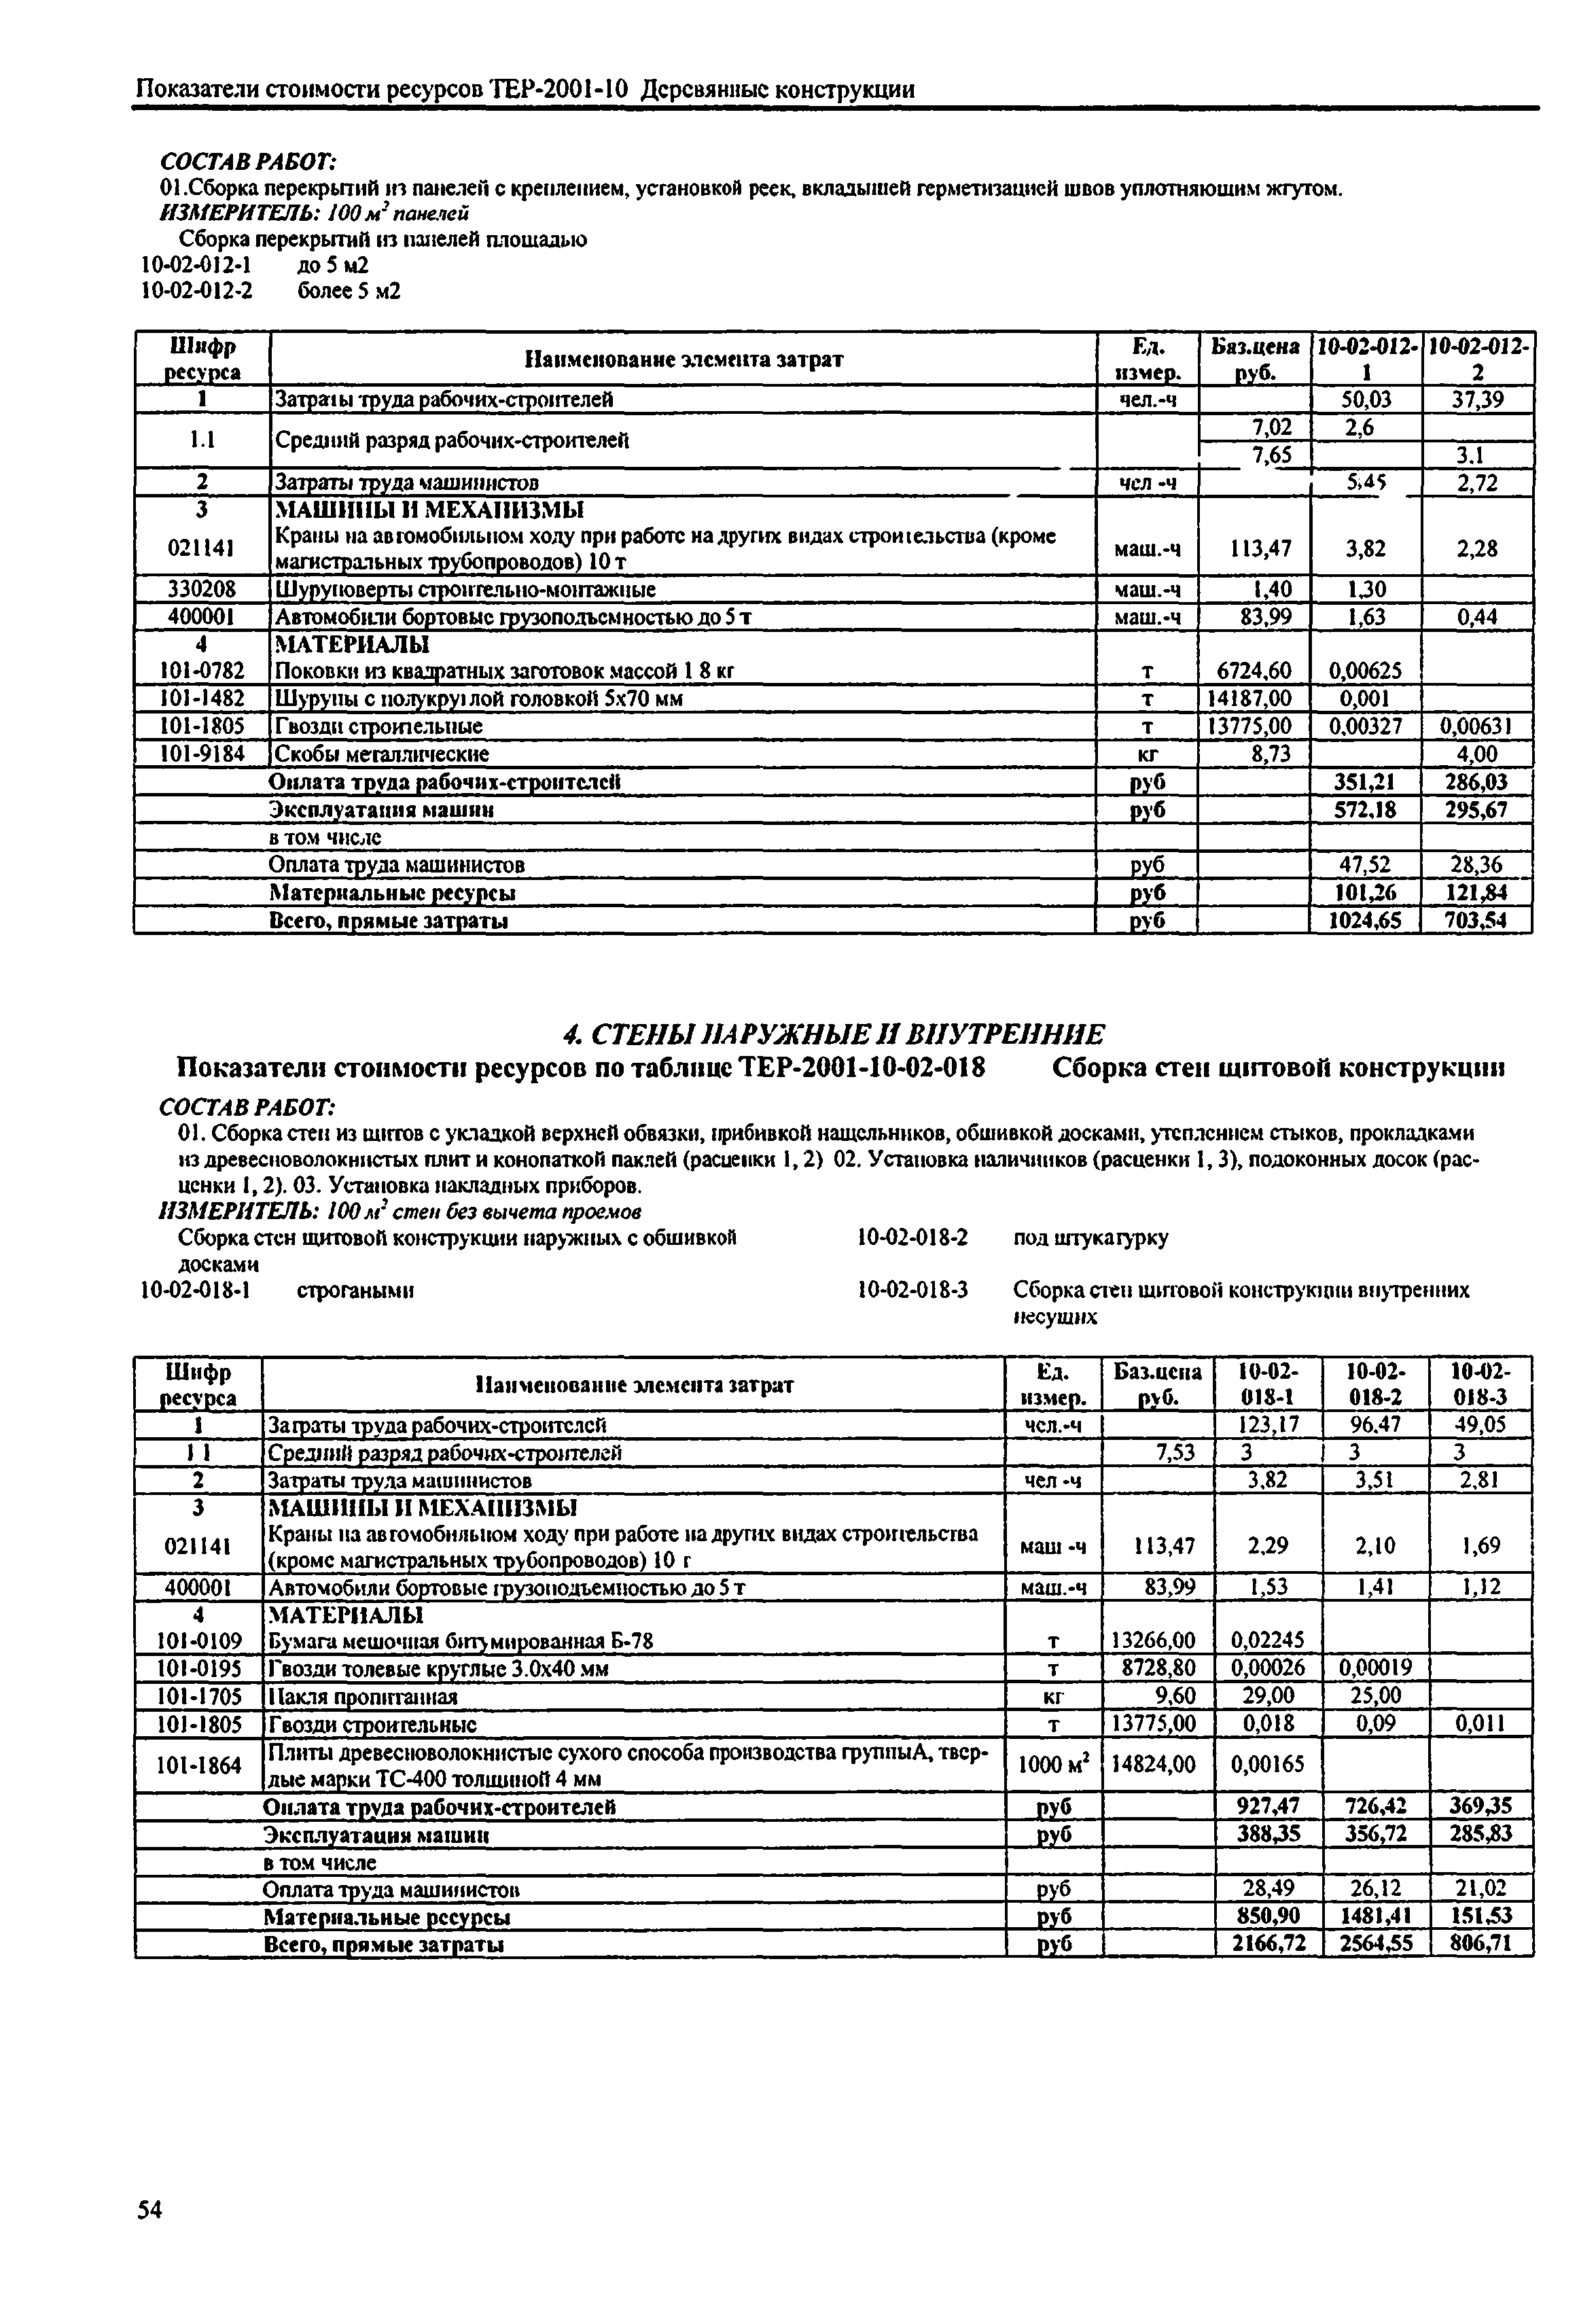 Справочное пособие к ТЕР 81-02-10-2001